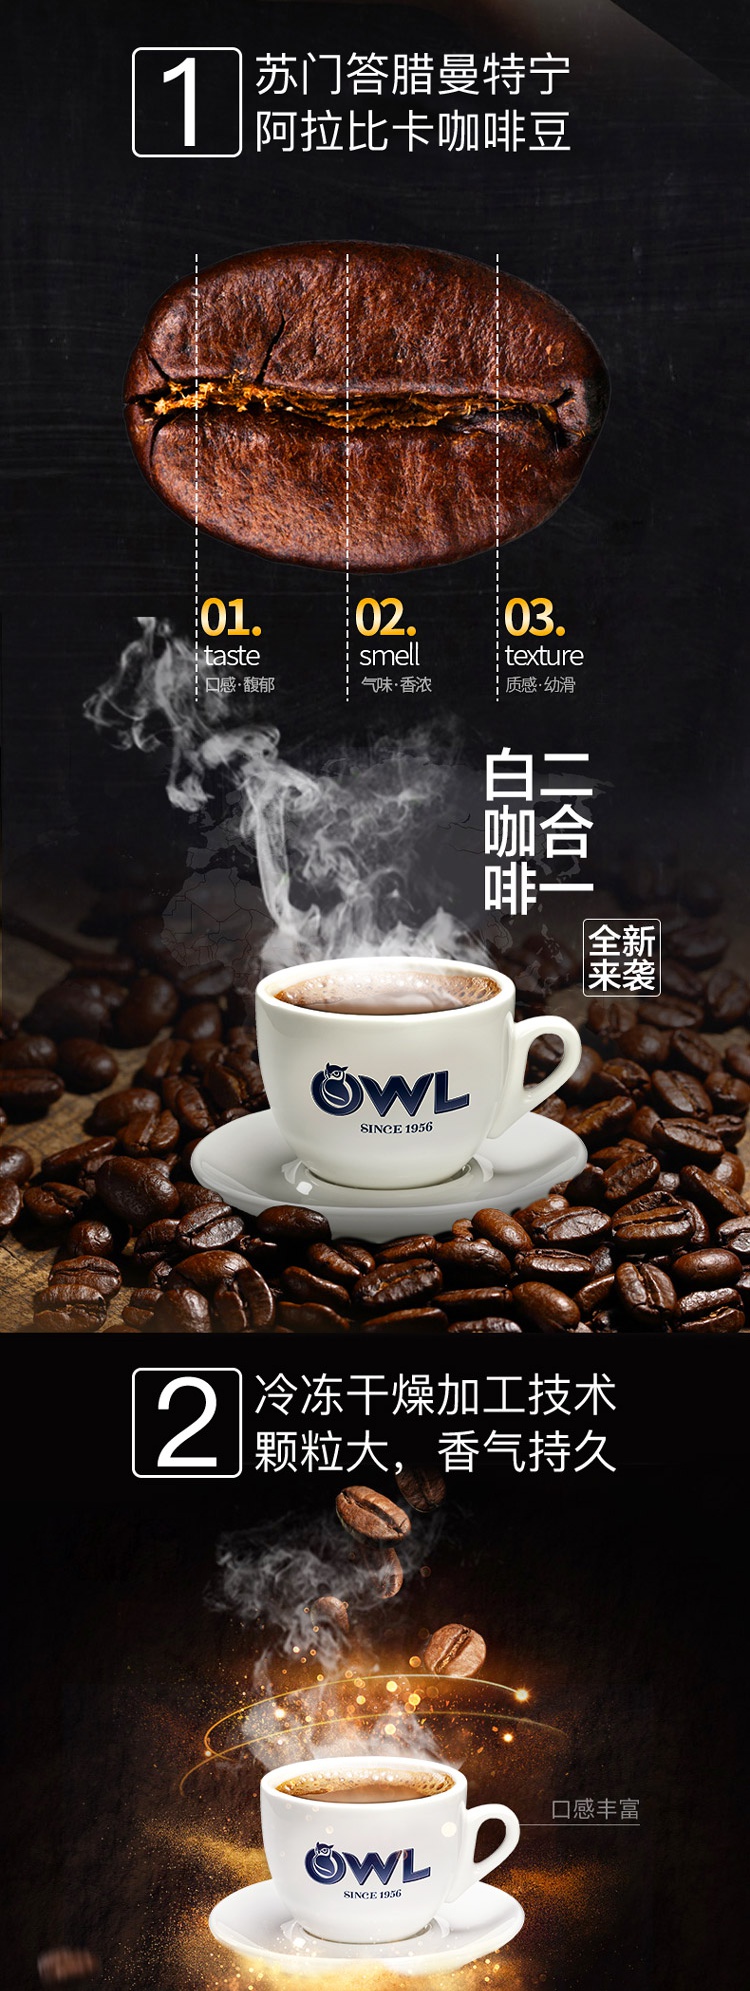 马来西亚进口 owl猫头鹰速溶咖啡二合一奶味白咖啡粉375g/15袋装